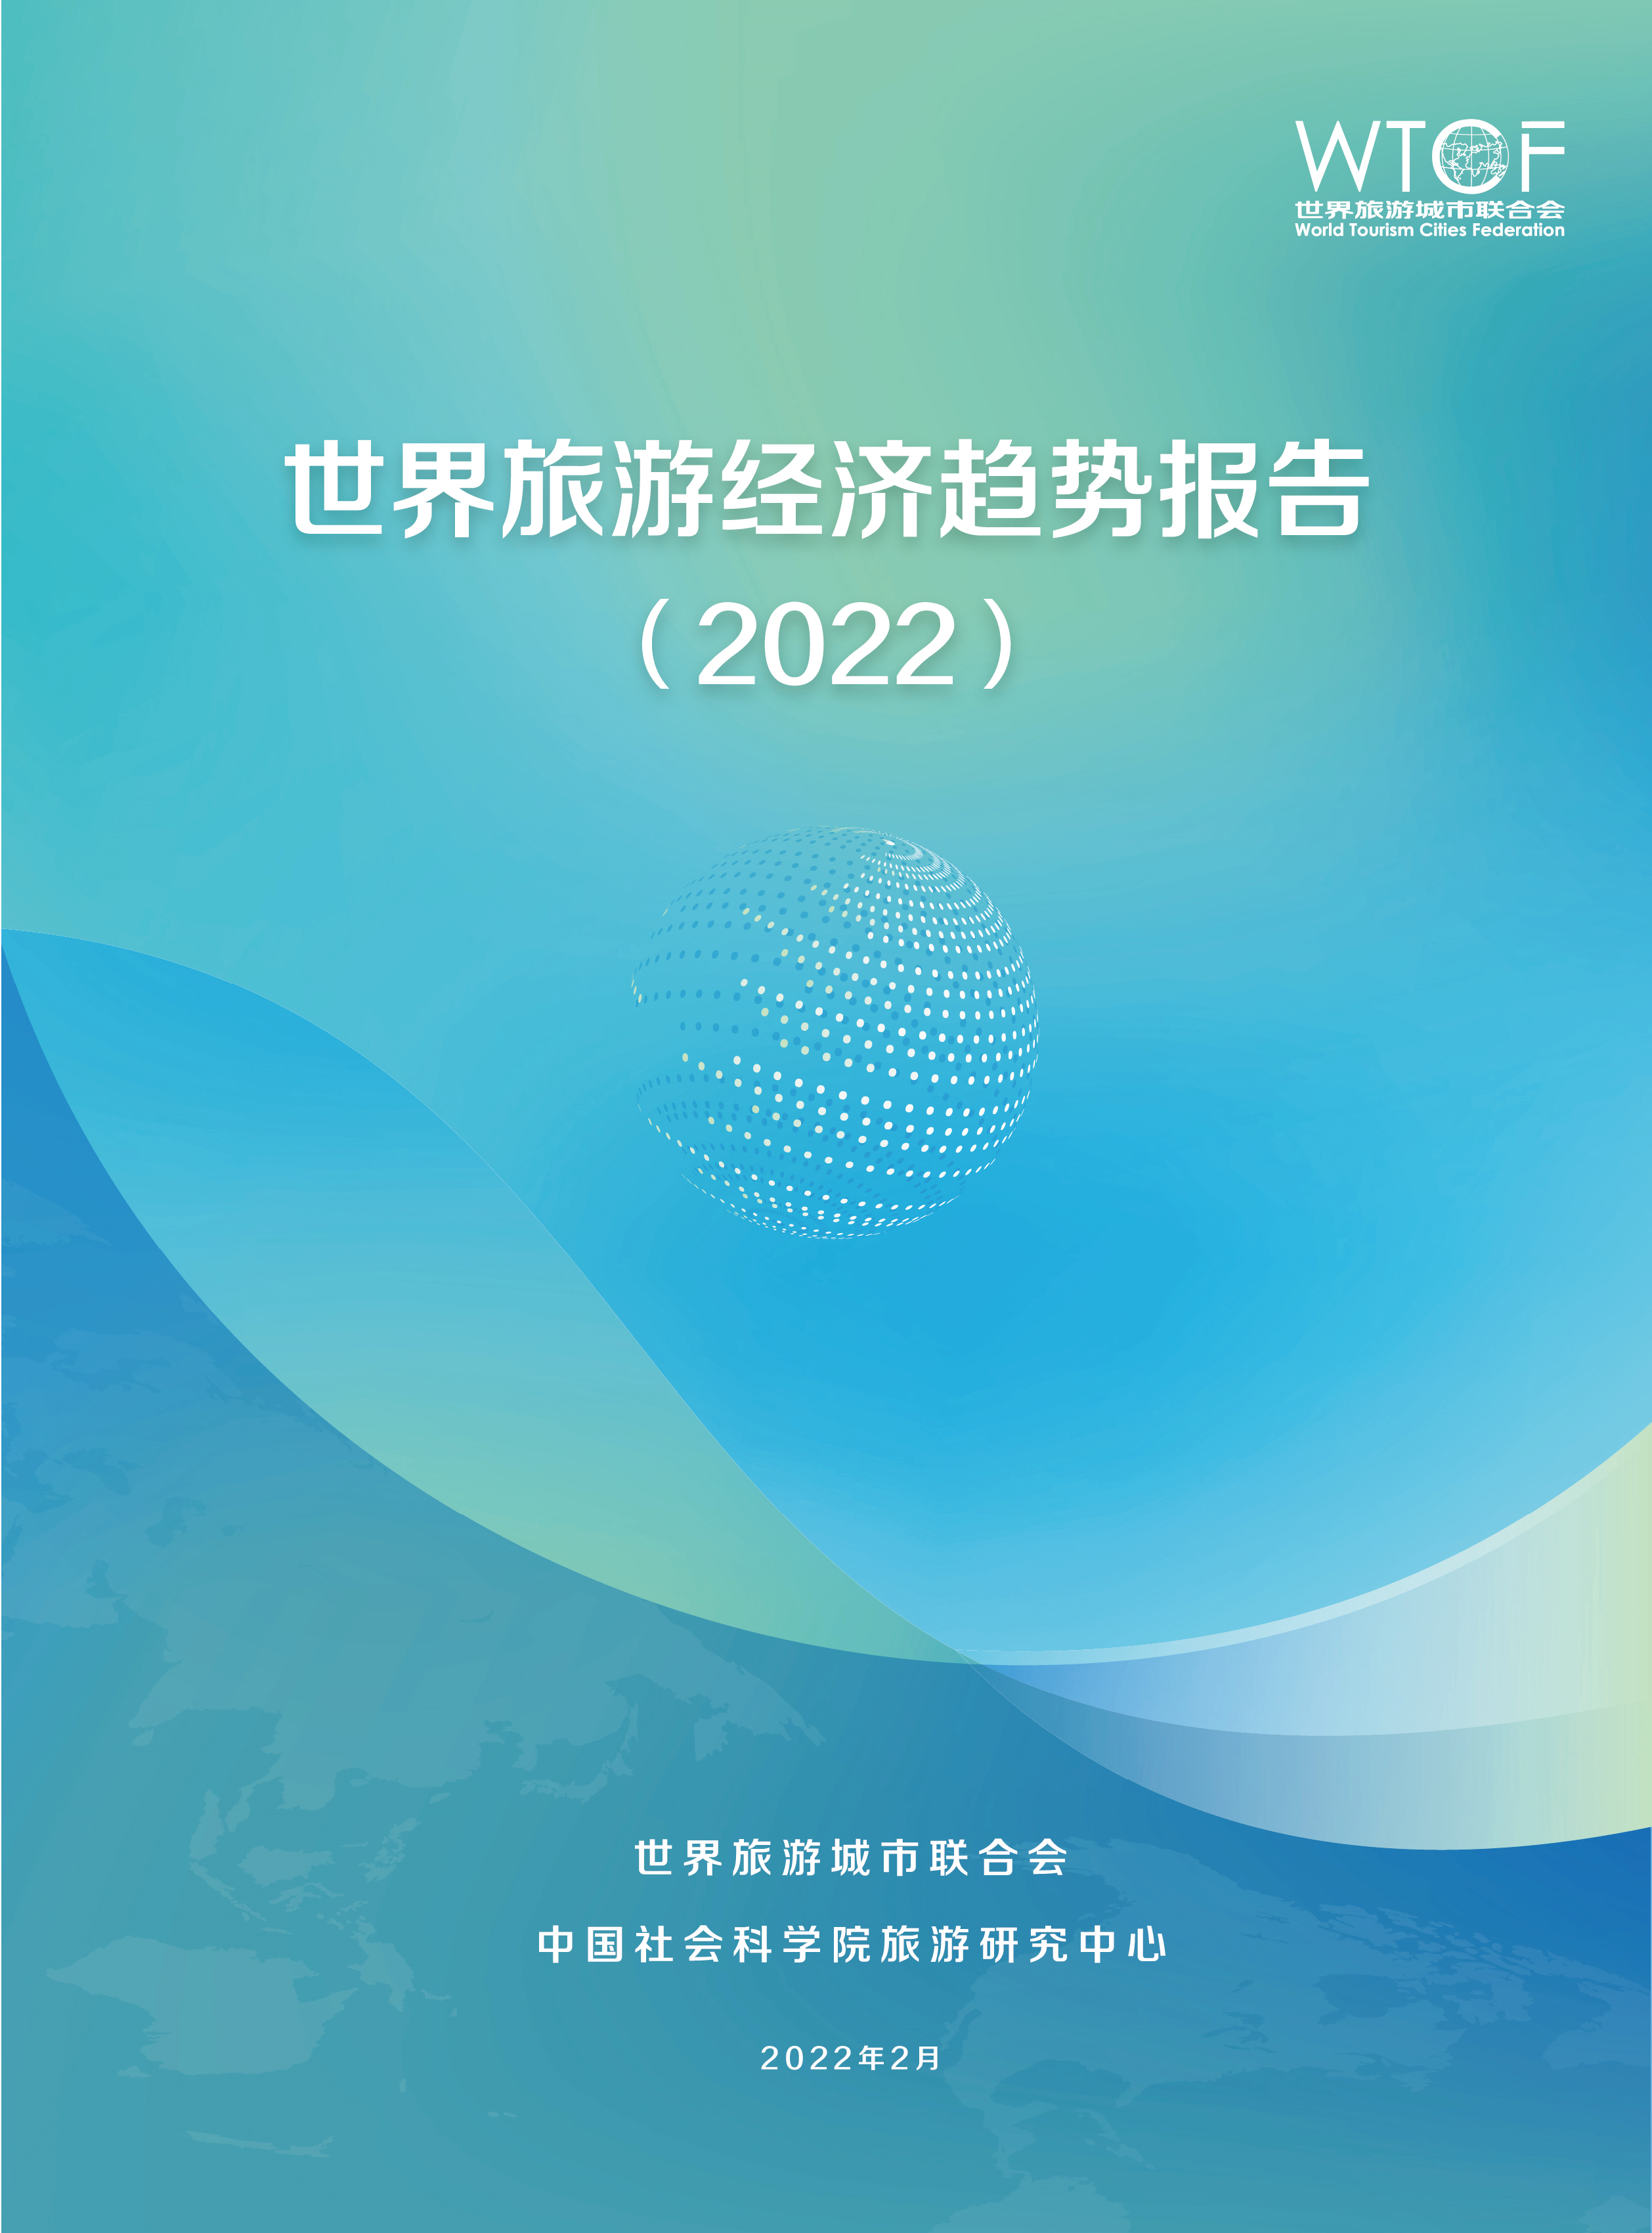 世界旅游经济趋势报告（2022）_fororder_《世界旅游经济趋势报告（2022）》简版-20220301-中文_1